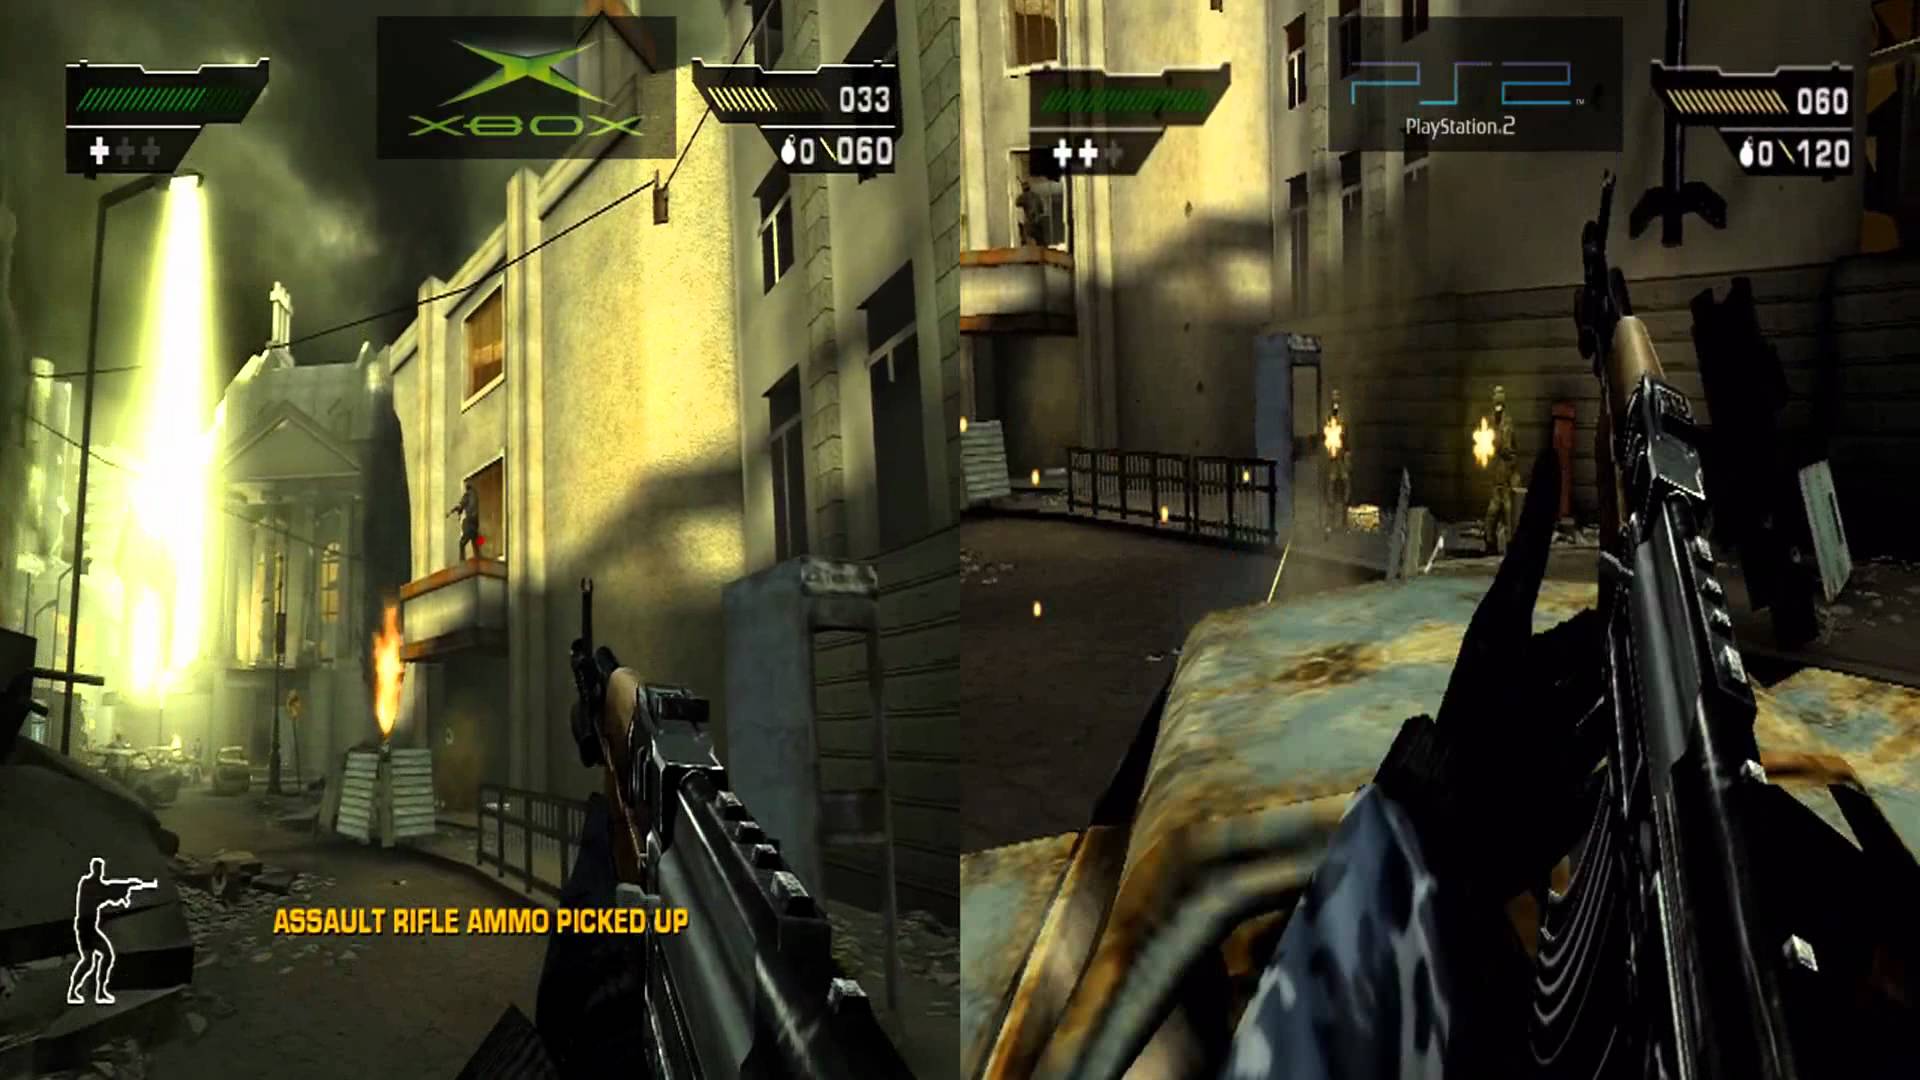 Ps2 graphics. Ps2 vs Xbox. Xbox Original vs ps2. Ps2 Xbox Original. Xbox vs PLAYSTATION 2.